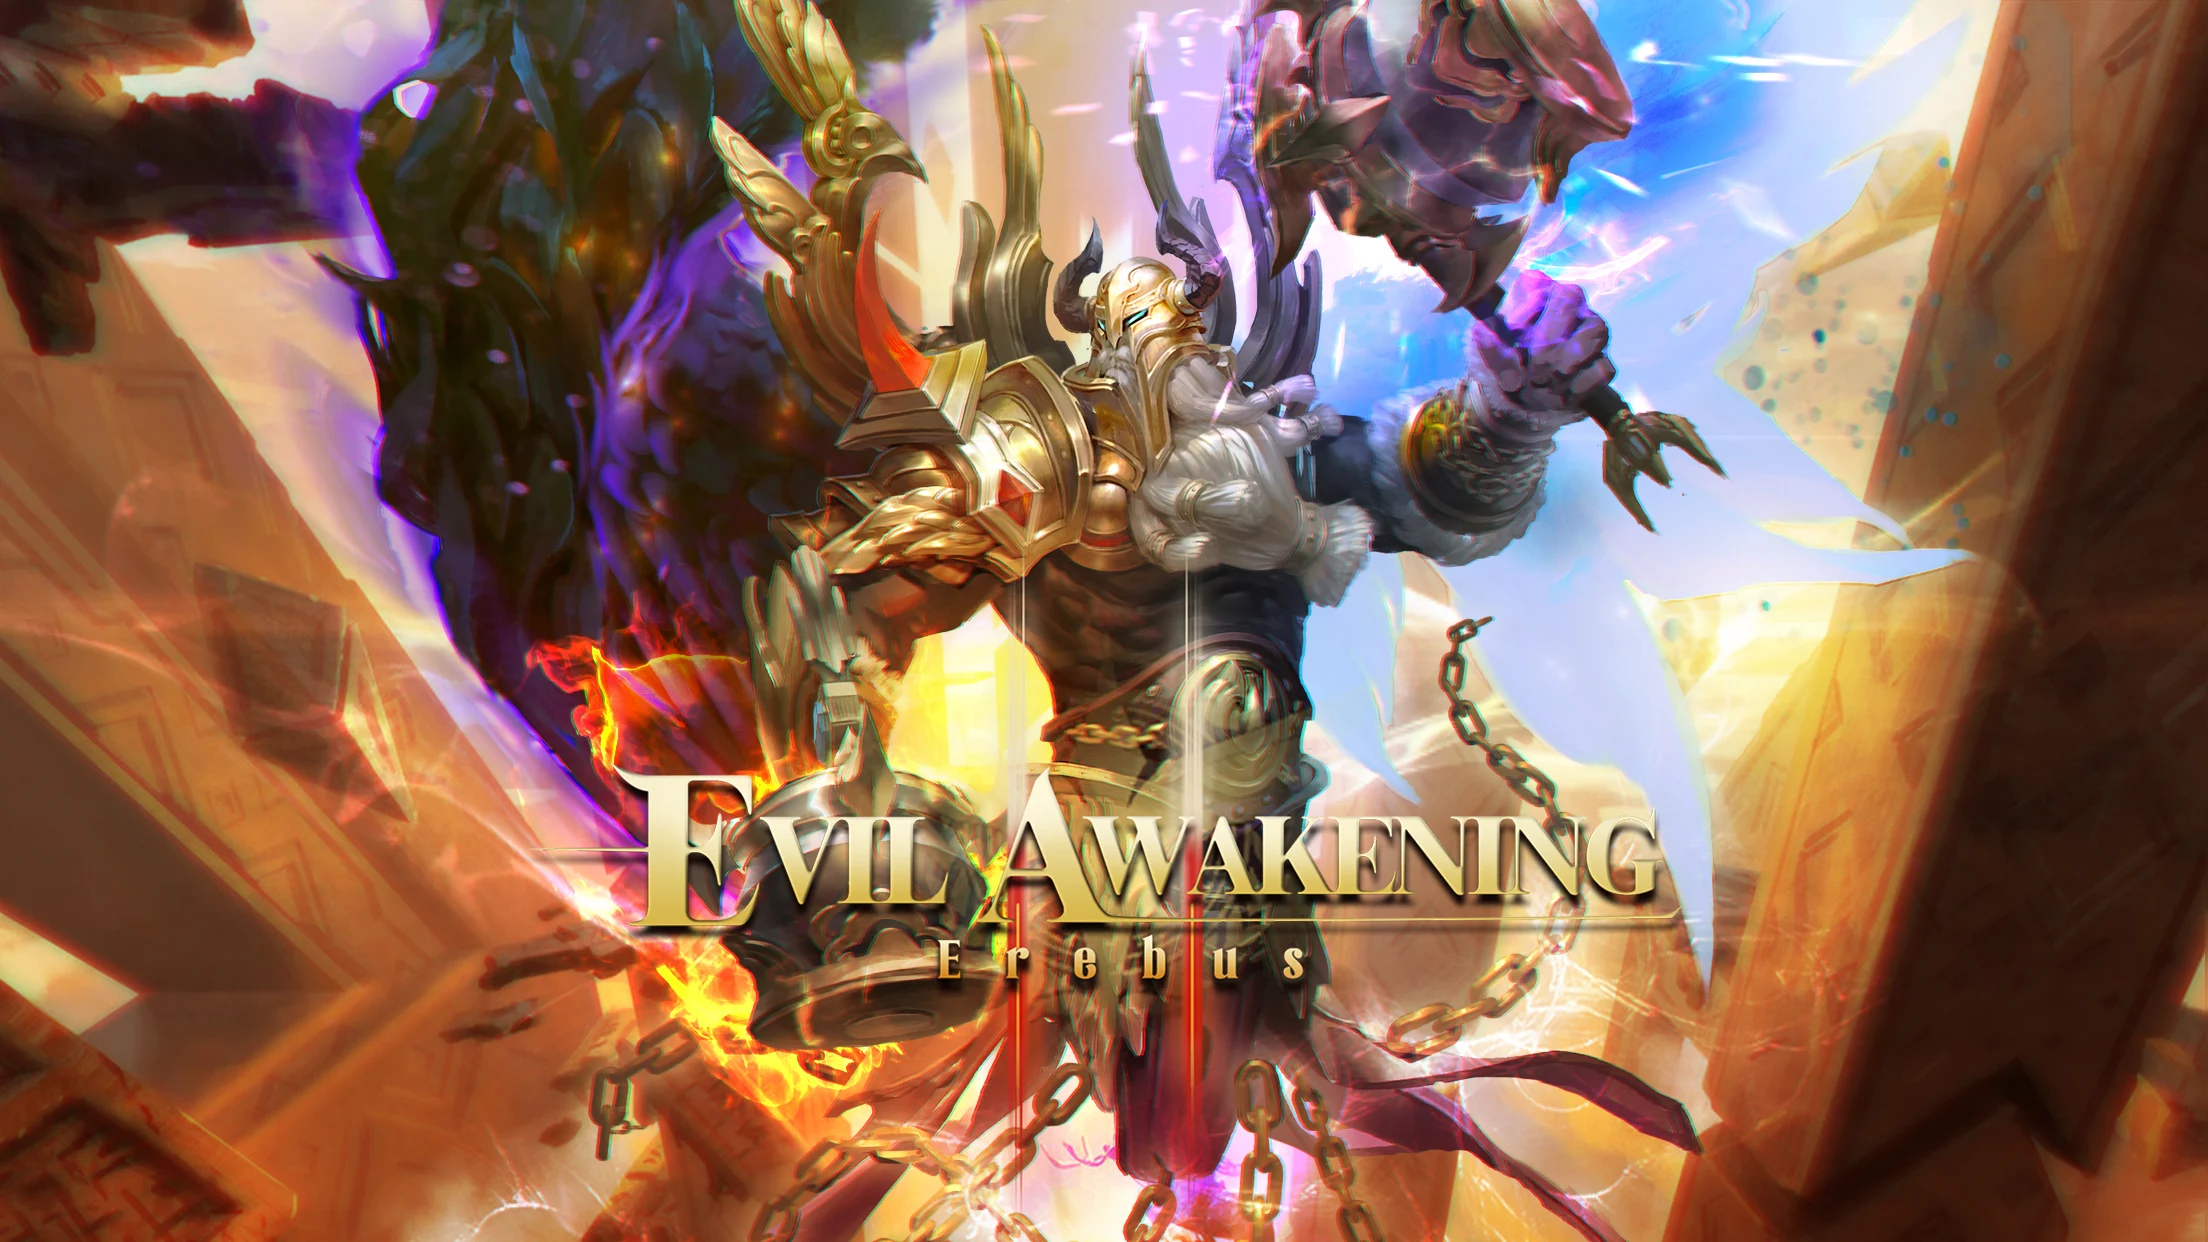 Play Evil Awakening 2 Online For Free